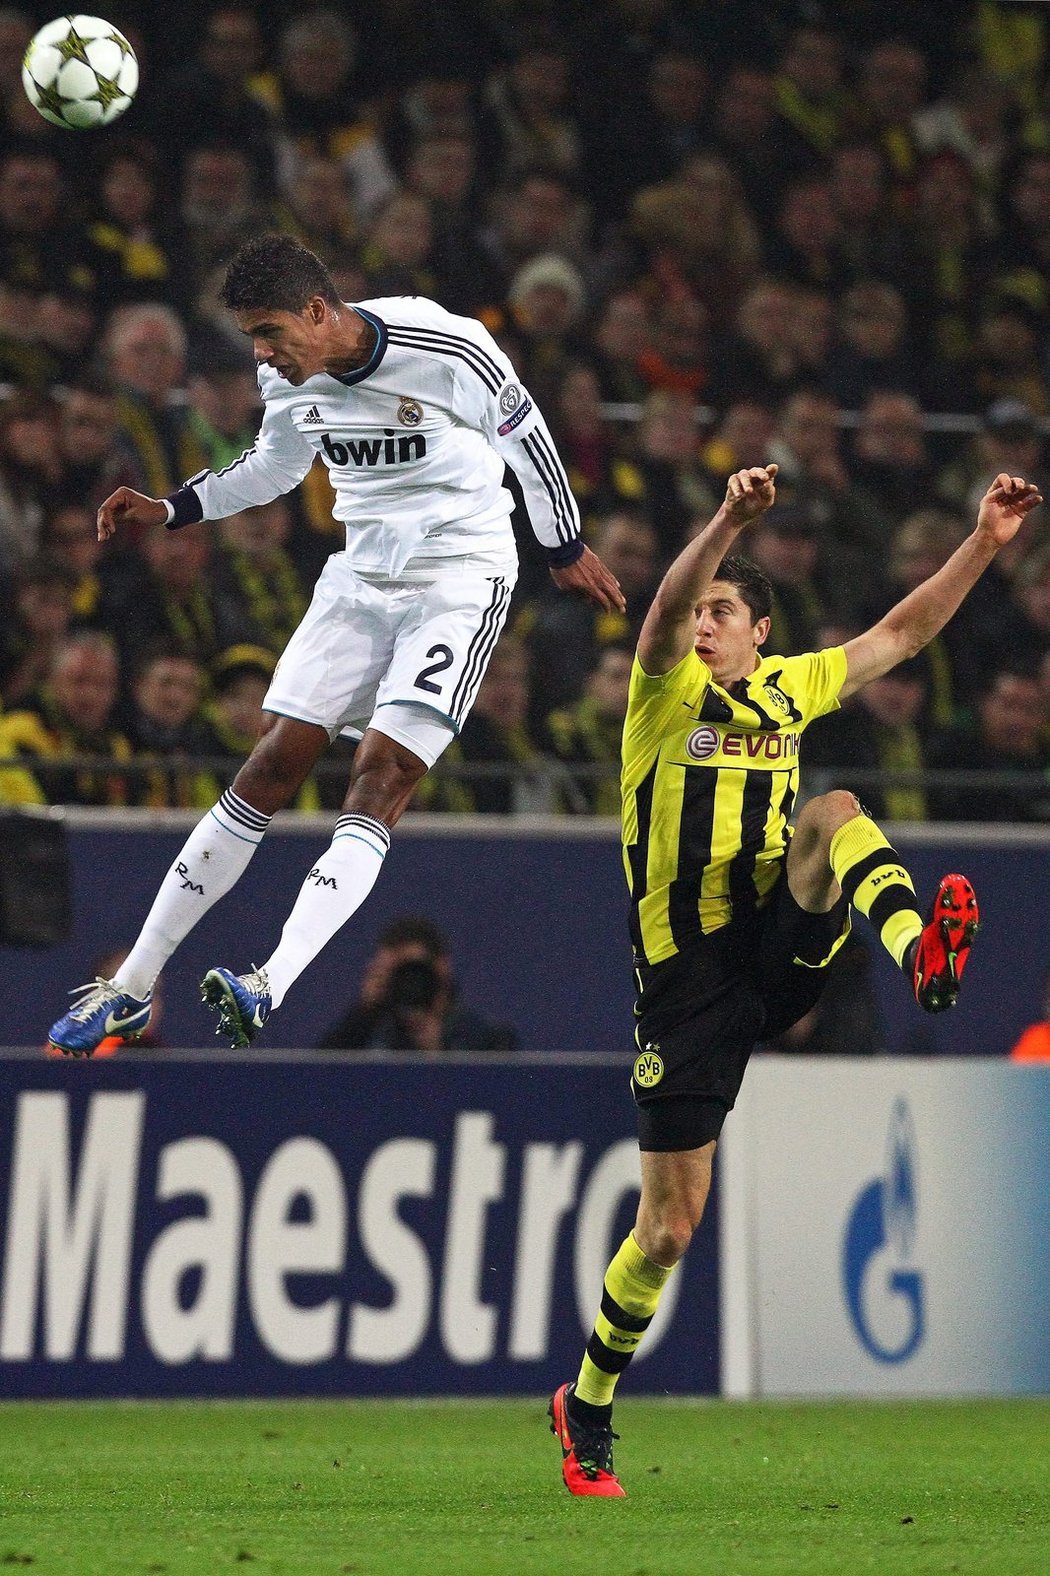 Tenhle souboj ve vzduchu jednoznačně ovládl mladík Varane, kanonýr Dortmundu Lewandowski neměl šanci